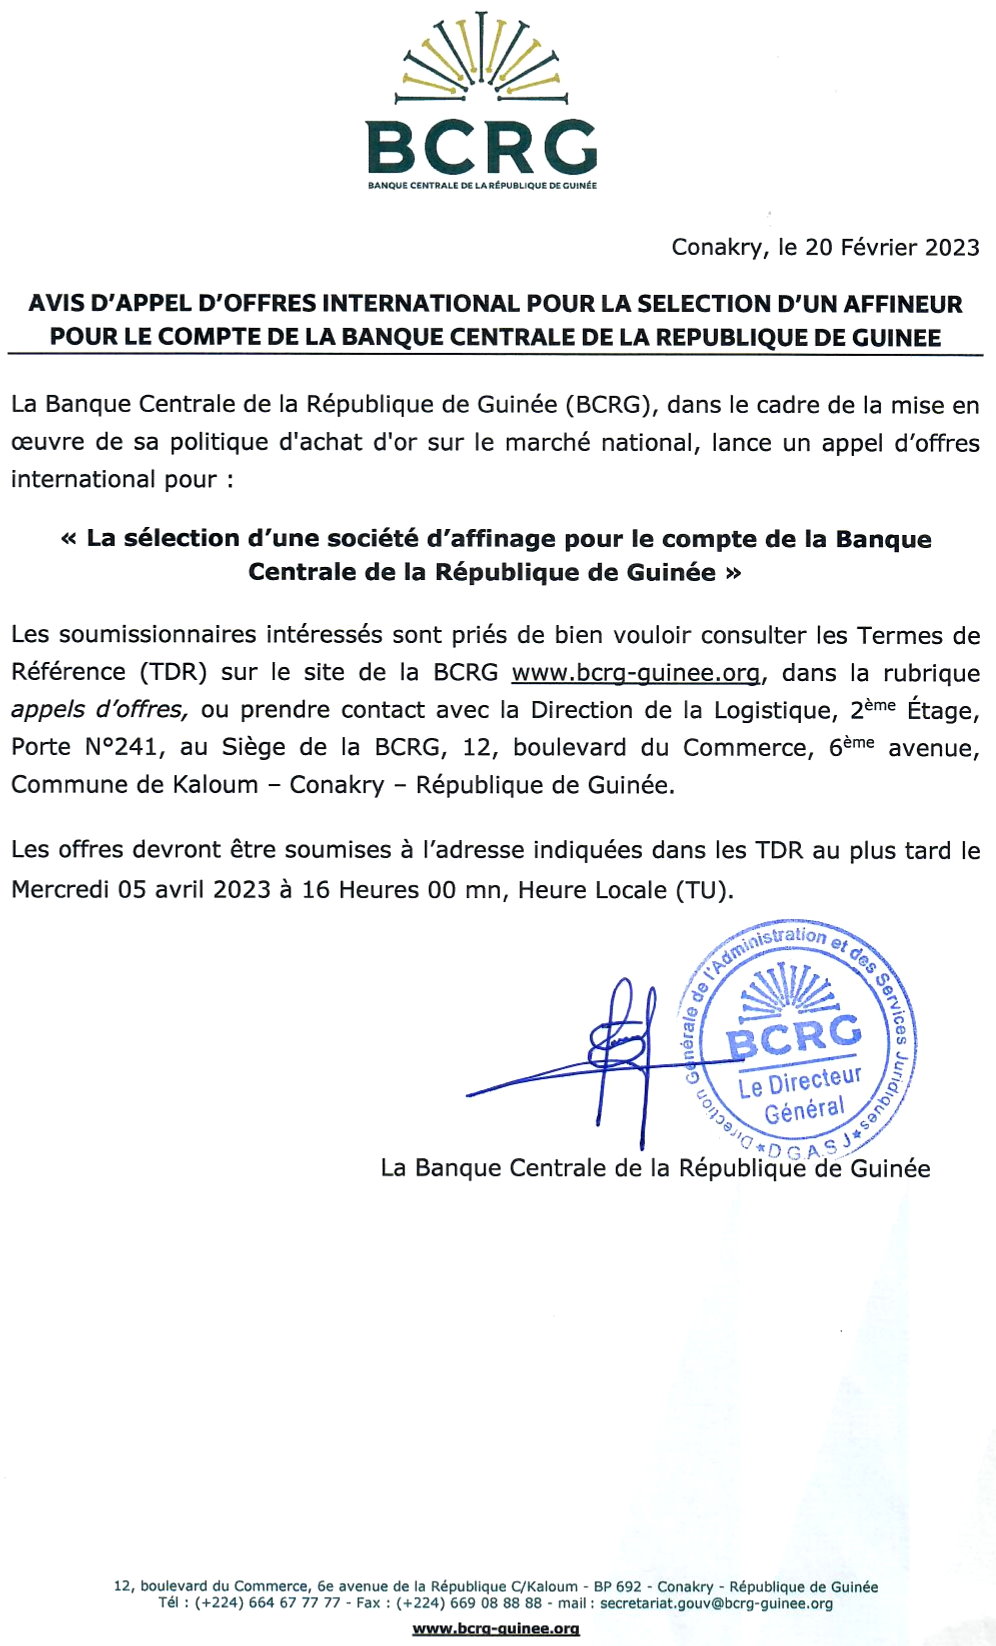 AVIS D'APPEL D'OFFRES INTERNATIONAL POUR LA SELECTION D'UN AFFINEUR POUR LE COMPTE DE LA BANQUE CENTRALE DE LA REPUBLIQUE DE GUINEE 